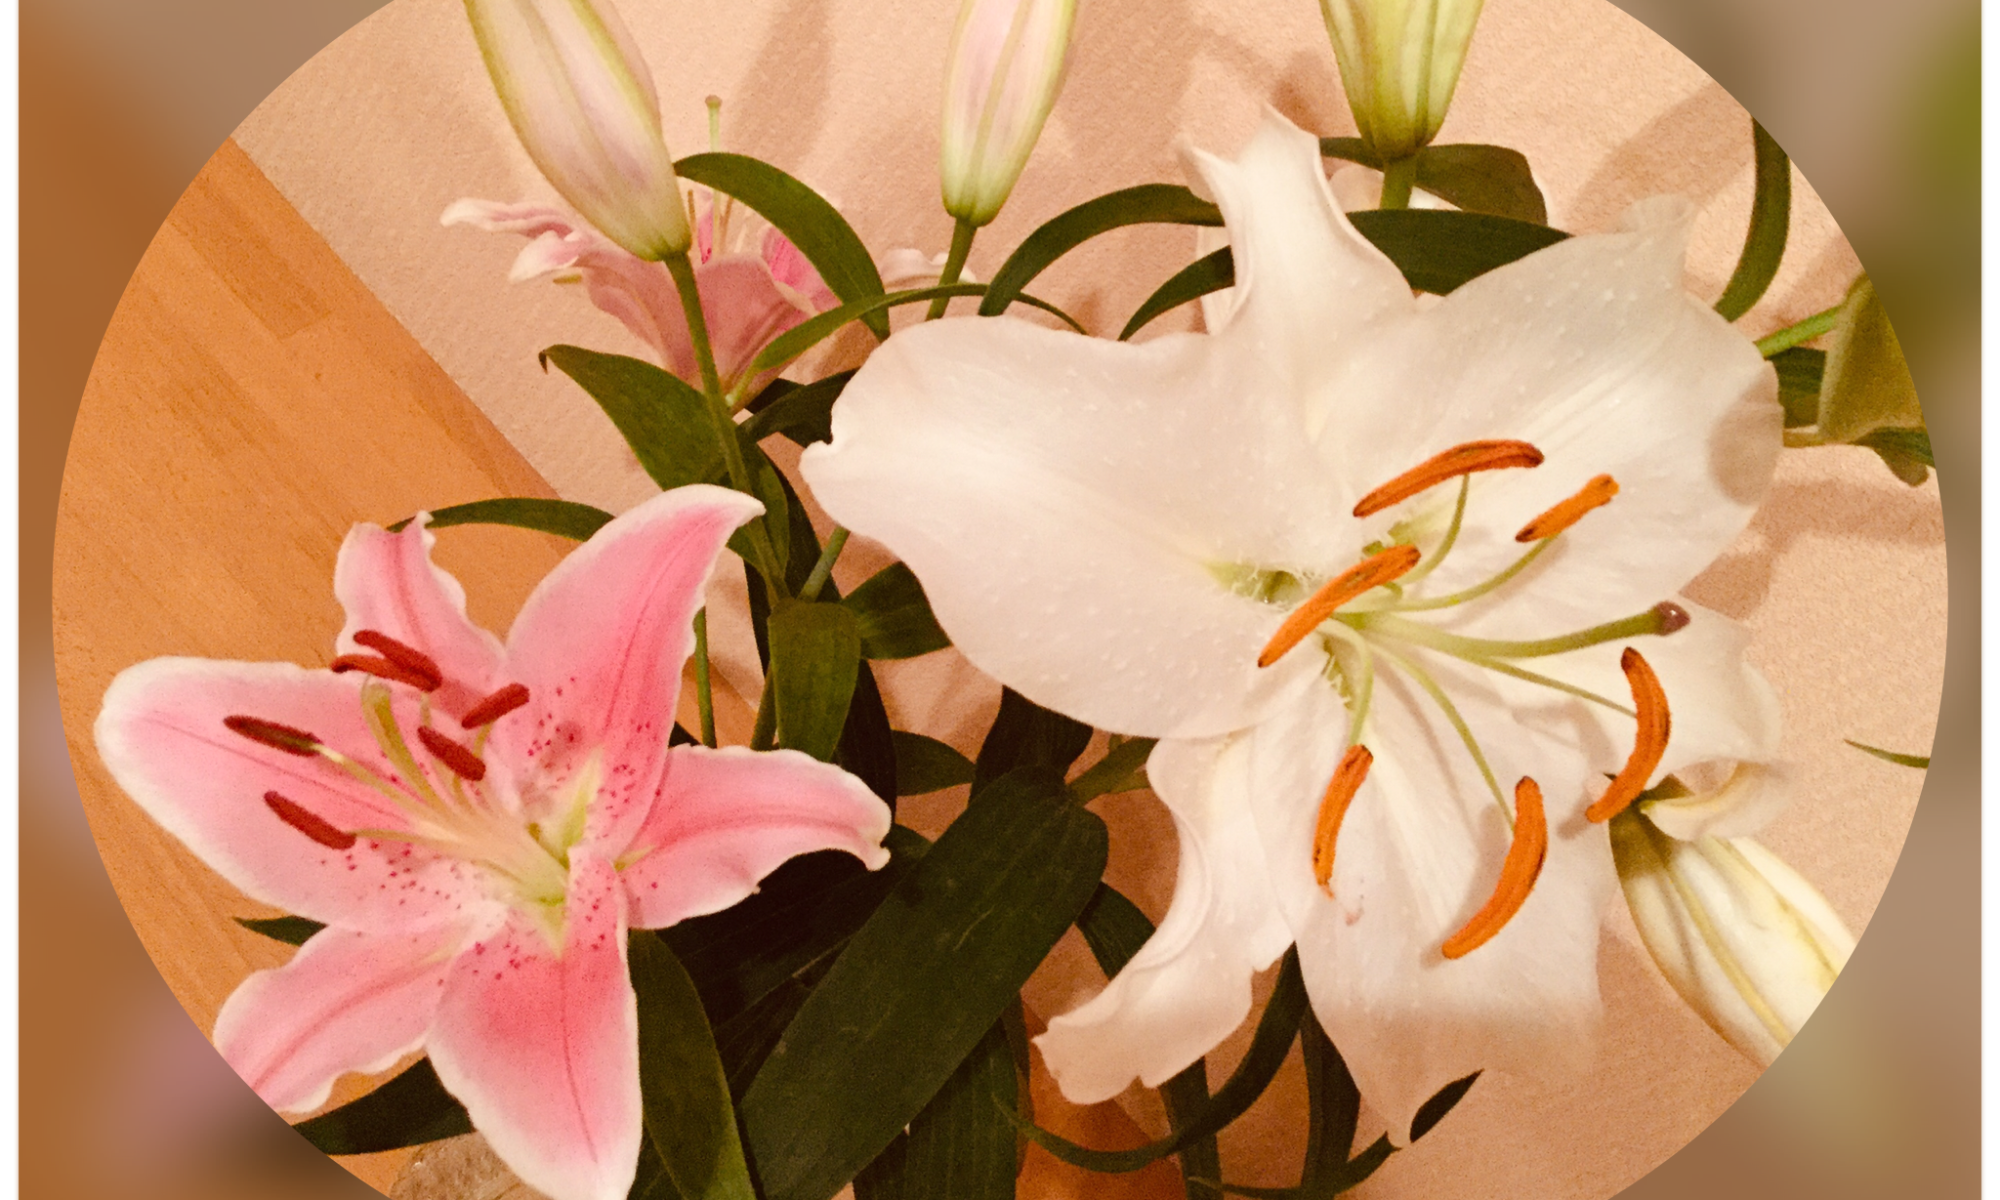 ゆりの花の良い香り2 カサブランカ Kyokoブログ